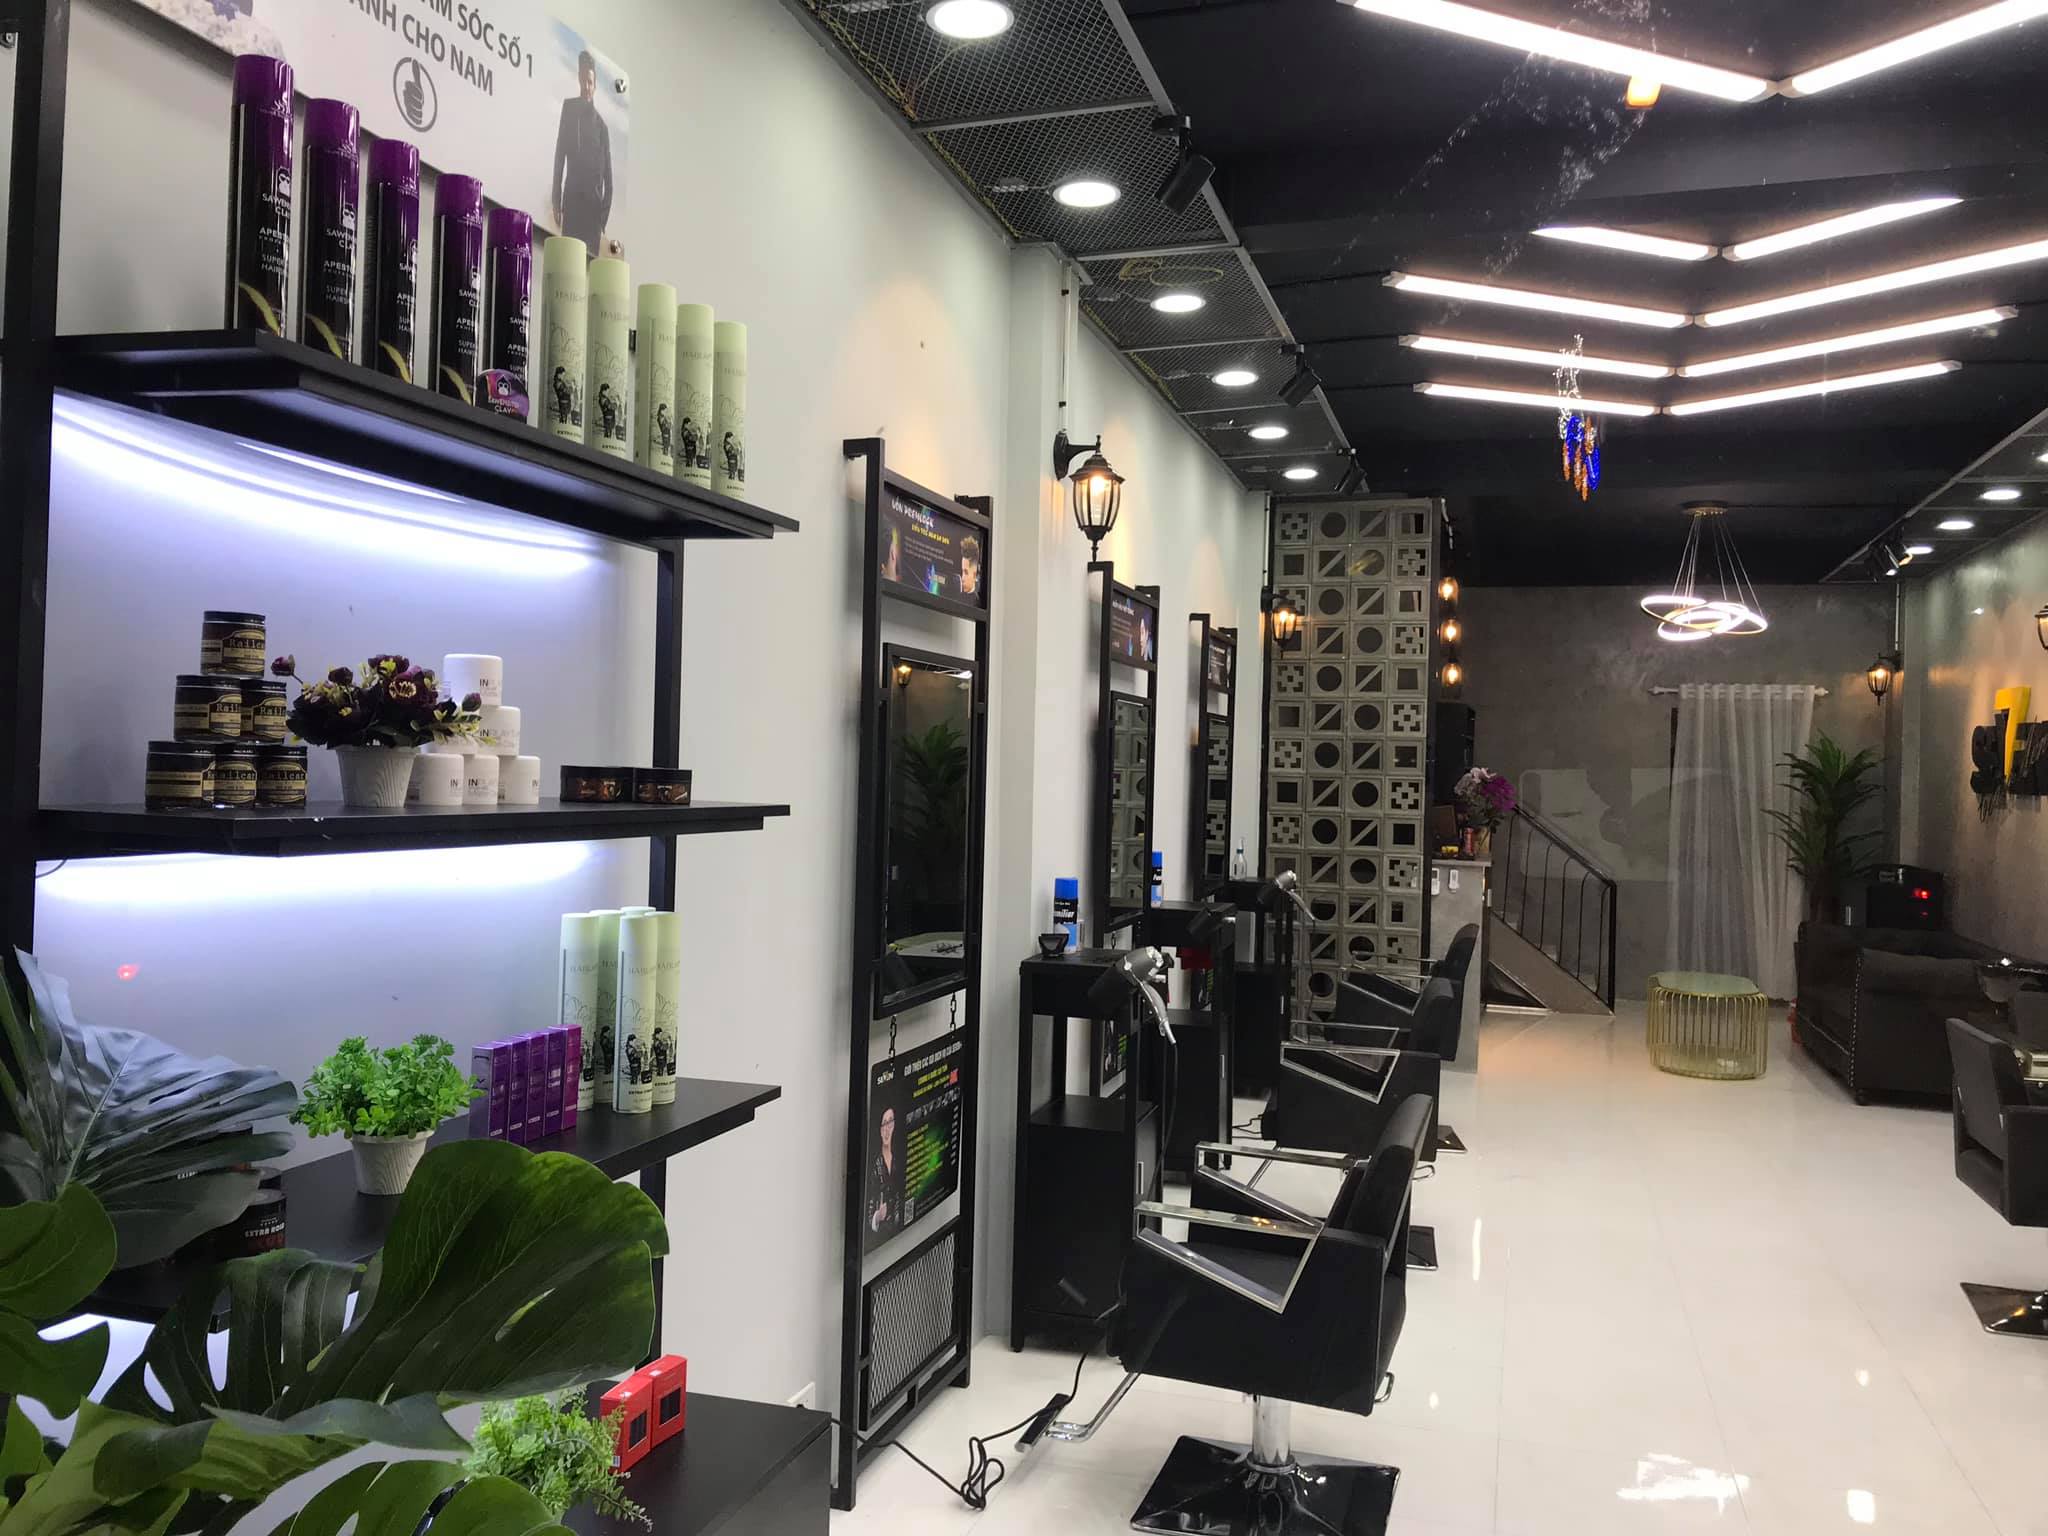 Kinh nghiệm làm biển hiệu salon tóc cực kỳ hút khách hàng  Làm bảng hiệu  Nguyễn Long  An Phát